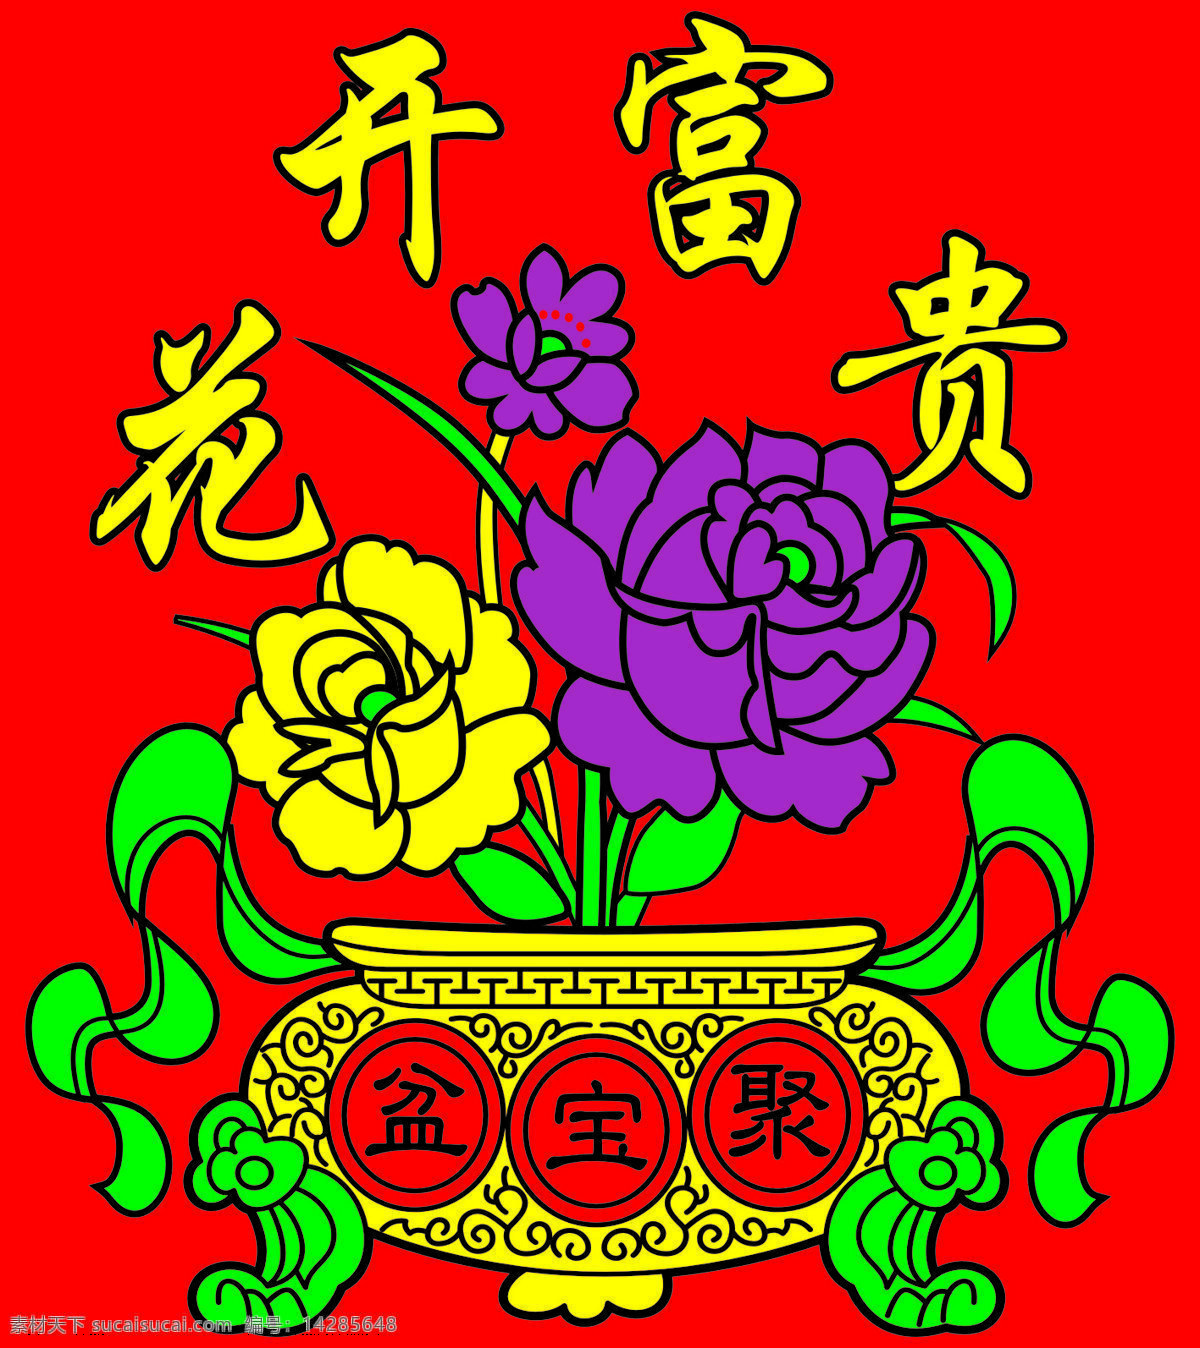 花开 富贵 聚宝盆 玫瑰花 紫色玫瑰花 灯笼图案 花开富贵 文化艺术 传统文化